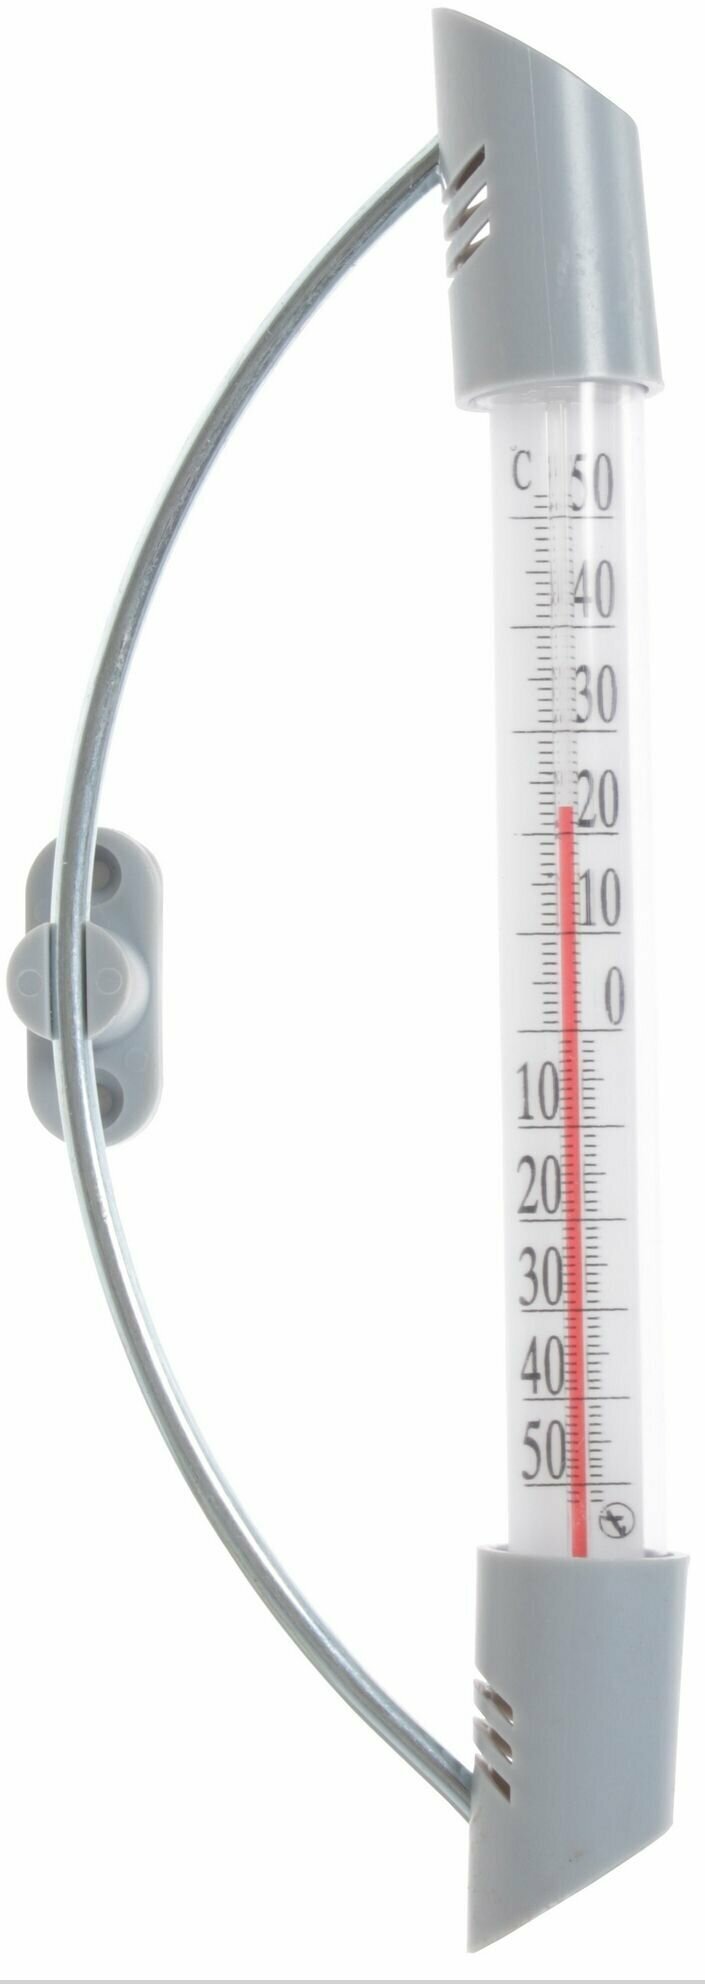 Наружный термометр, оконный, из стекла и пластика, без ртути, высота 23см. Определяет температуру воздуха снаружи помещений. Липучка позволяет крепить